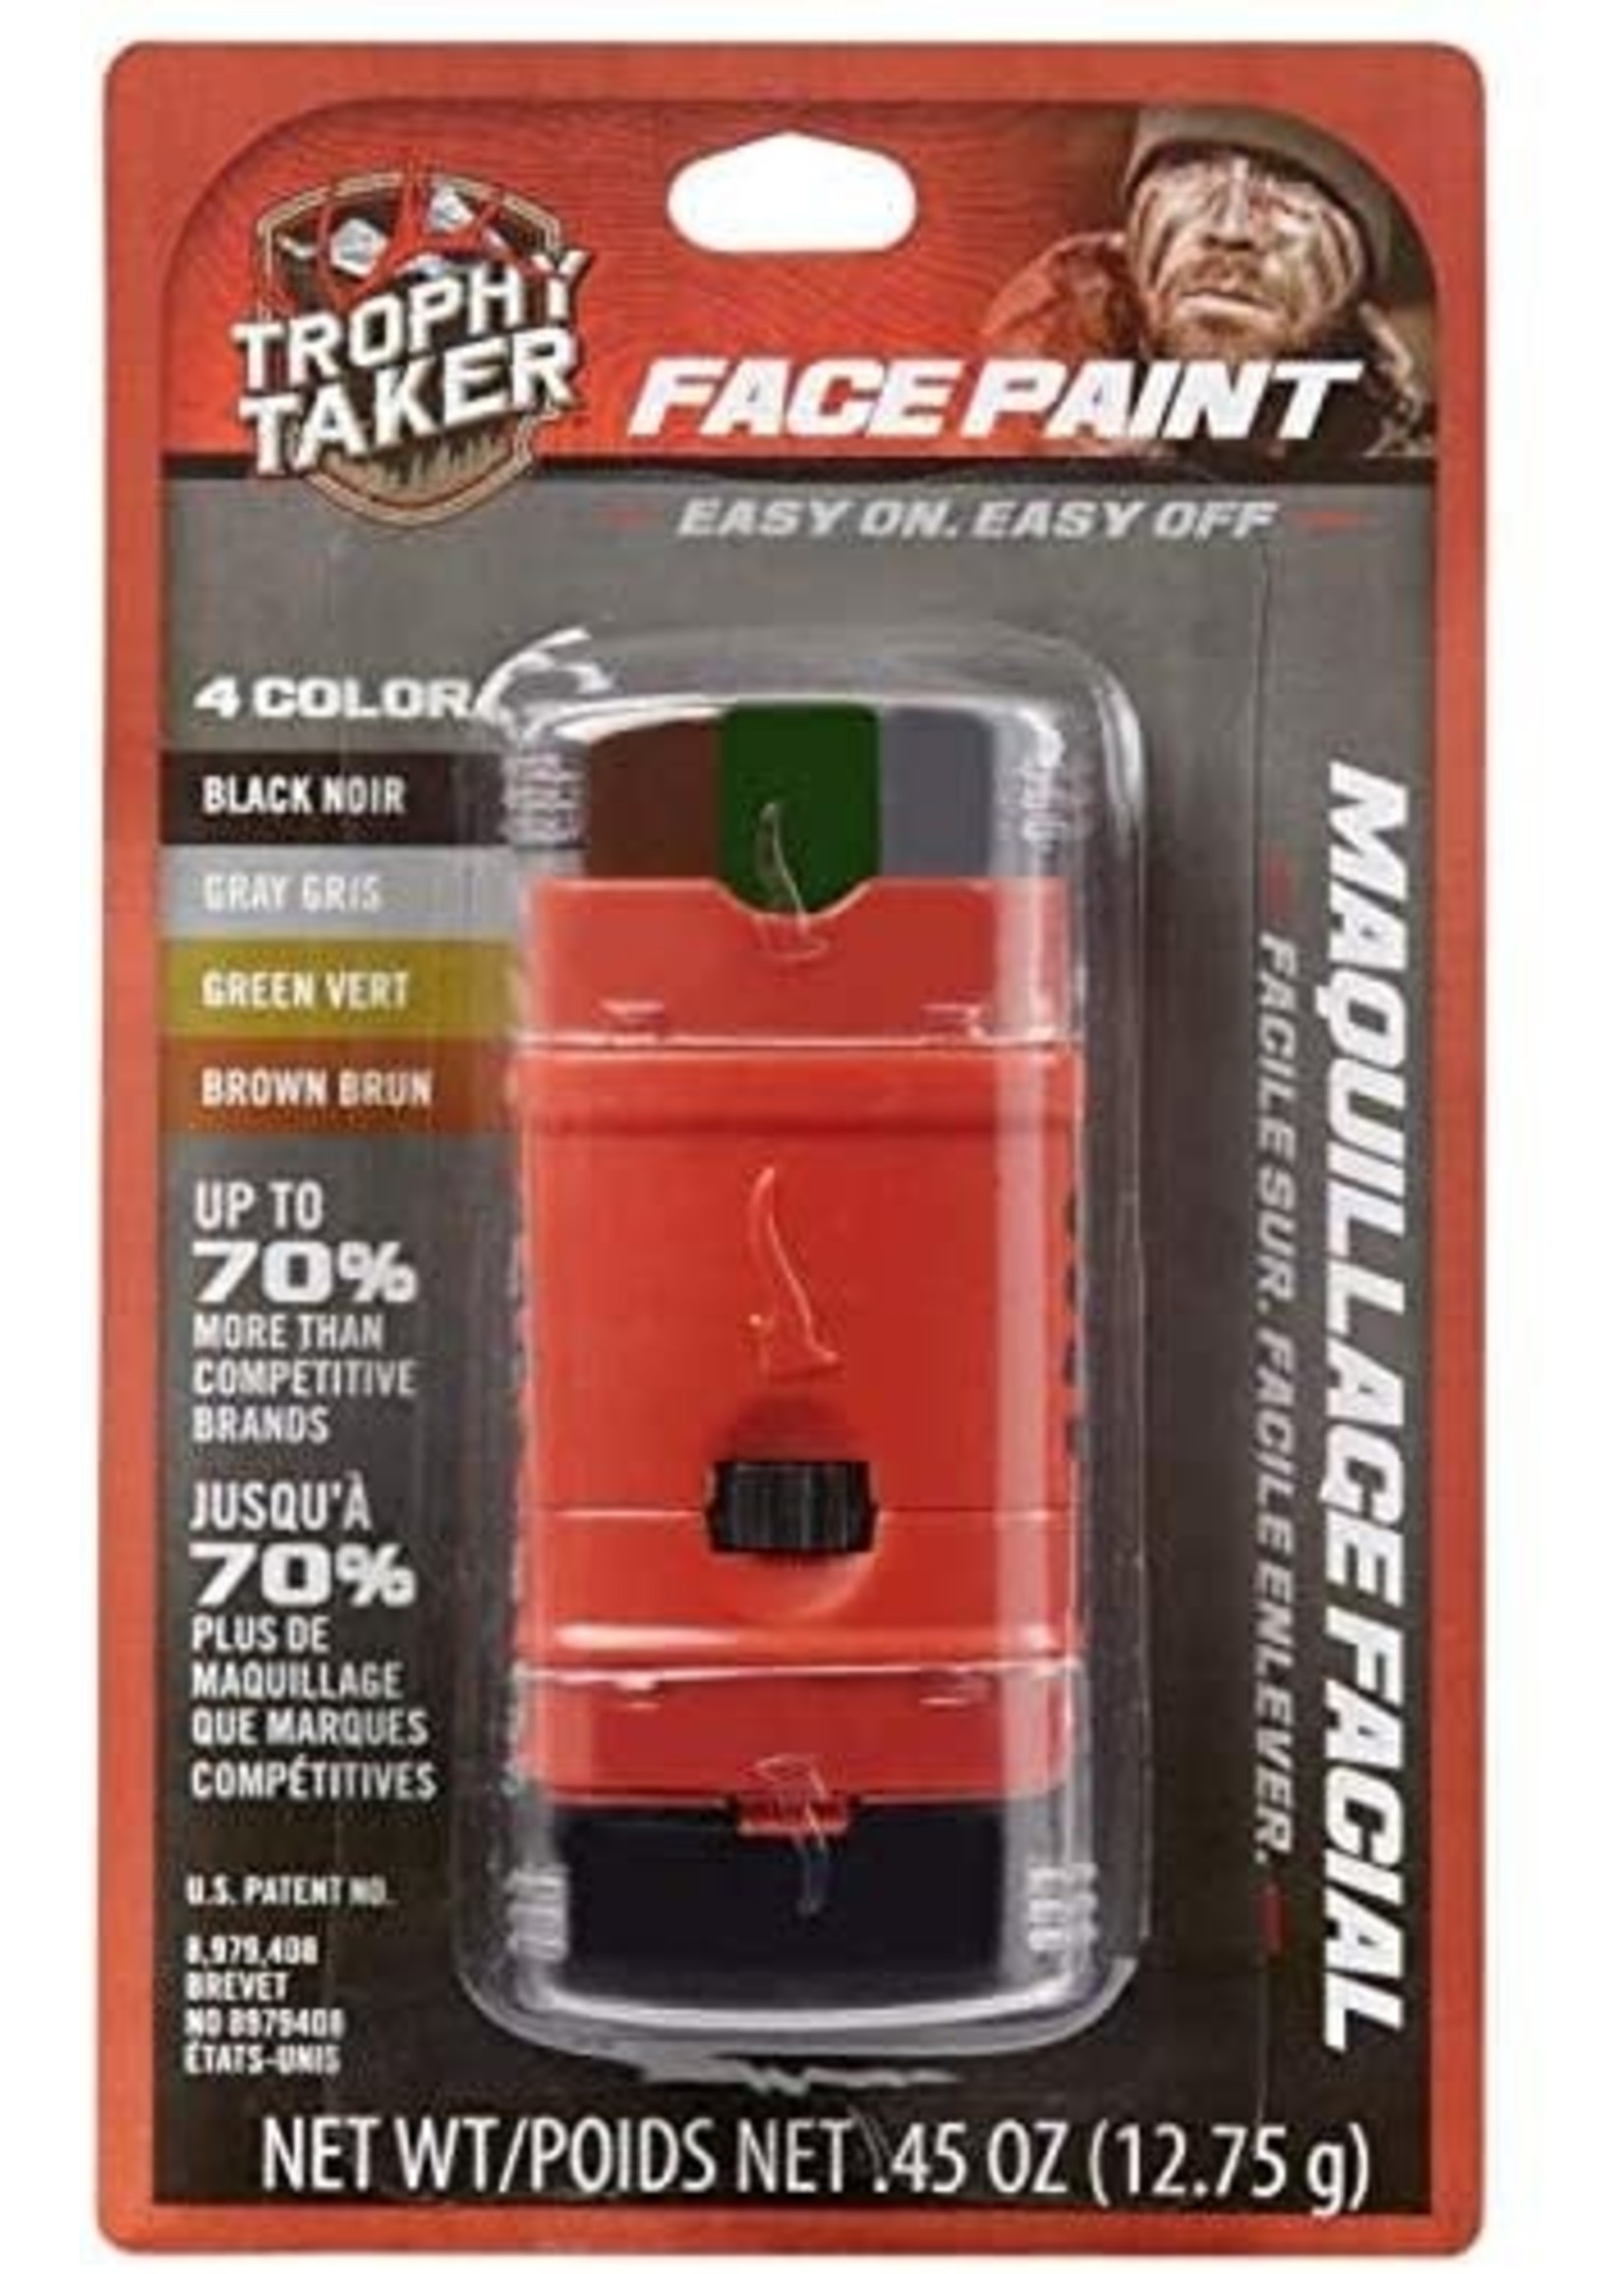 Trophy Taker Trophy Taker Face Paint 4 Color